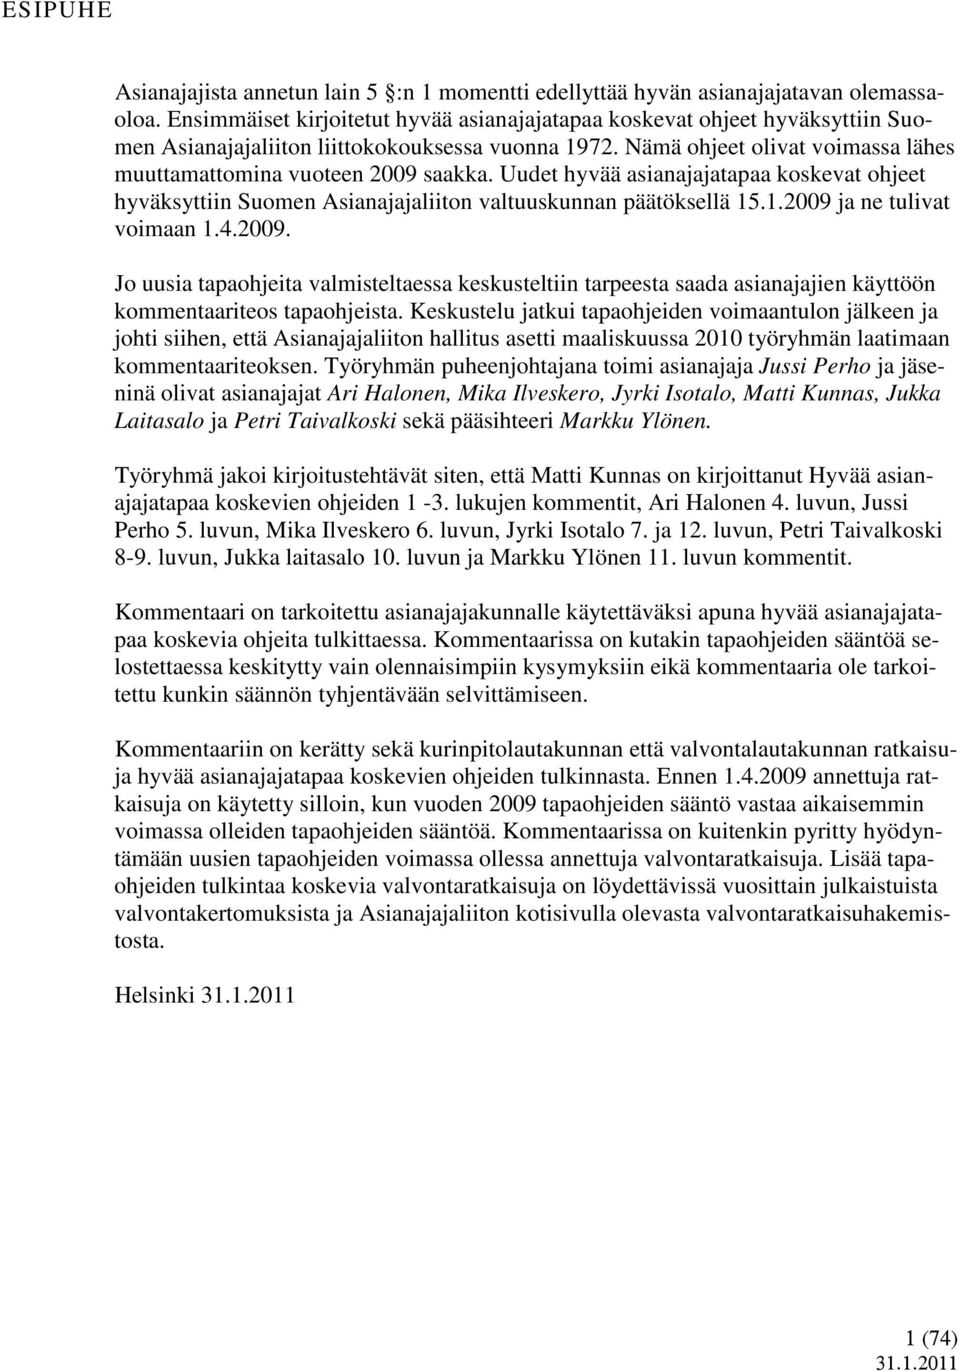 Uudet hyvää asianajajatapaa koskevat ohjeet hyväksyttiin Suomen Asianajajaliiton valtuuskunnan päätöksellä 15.1.2009 